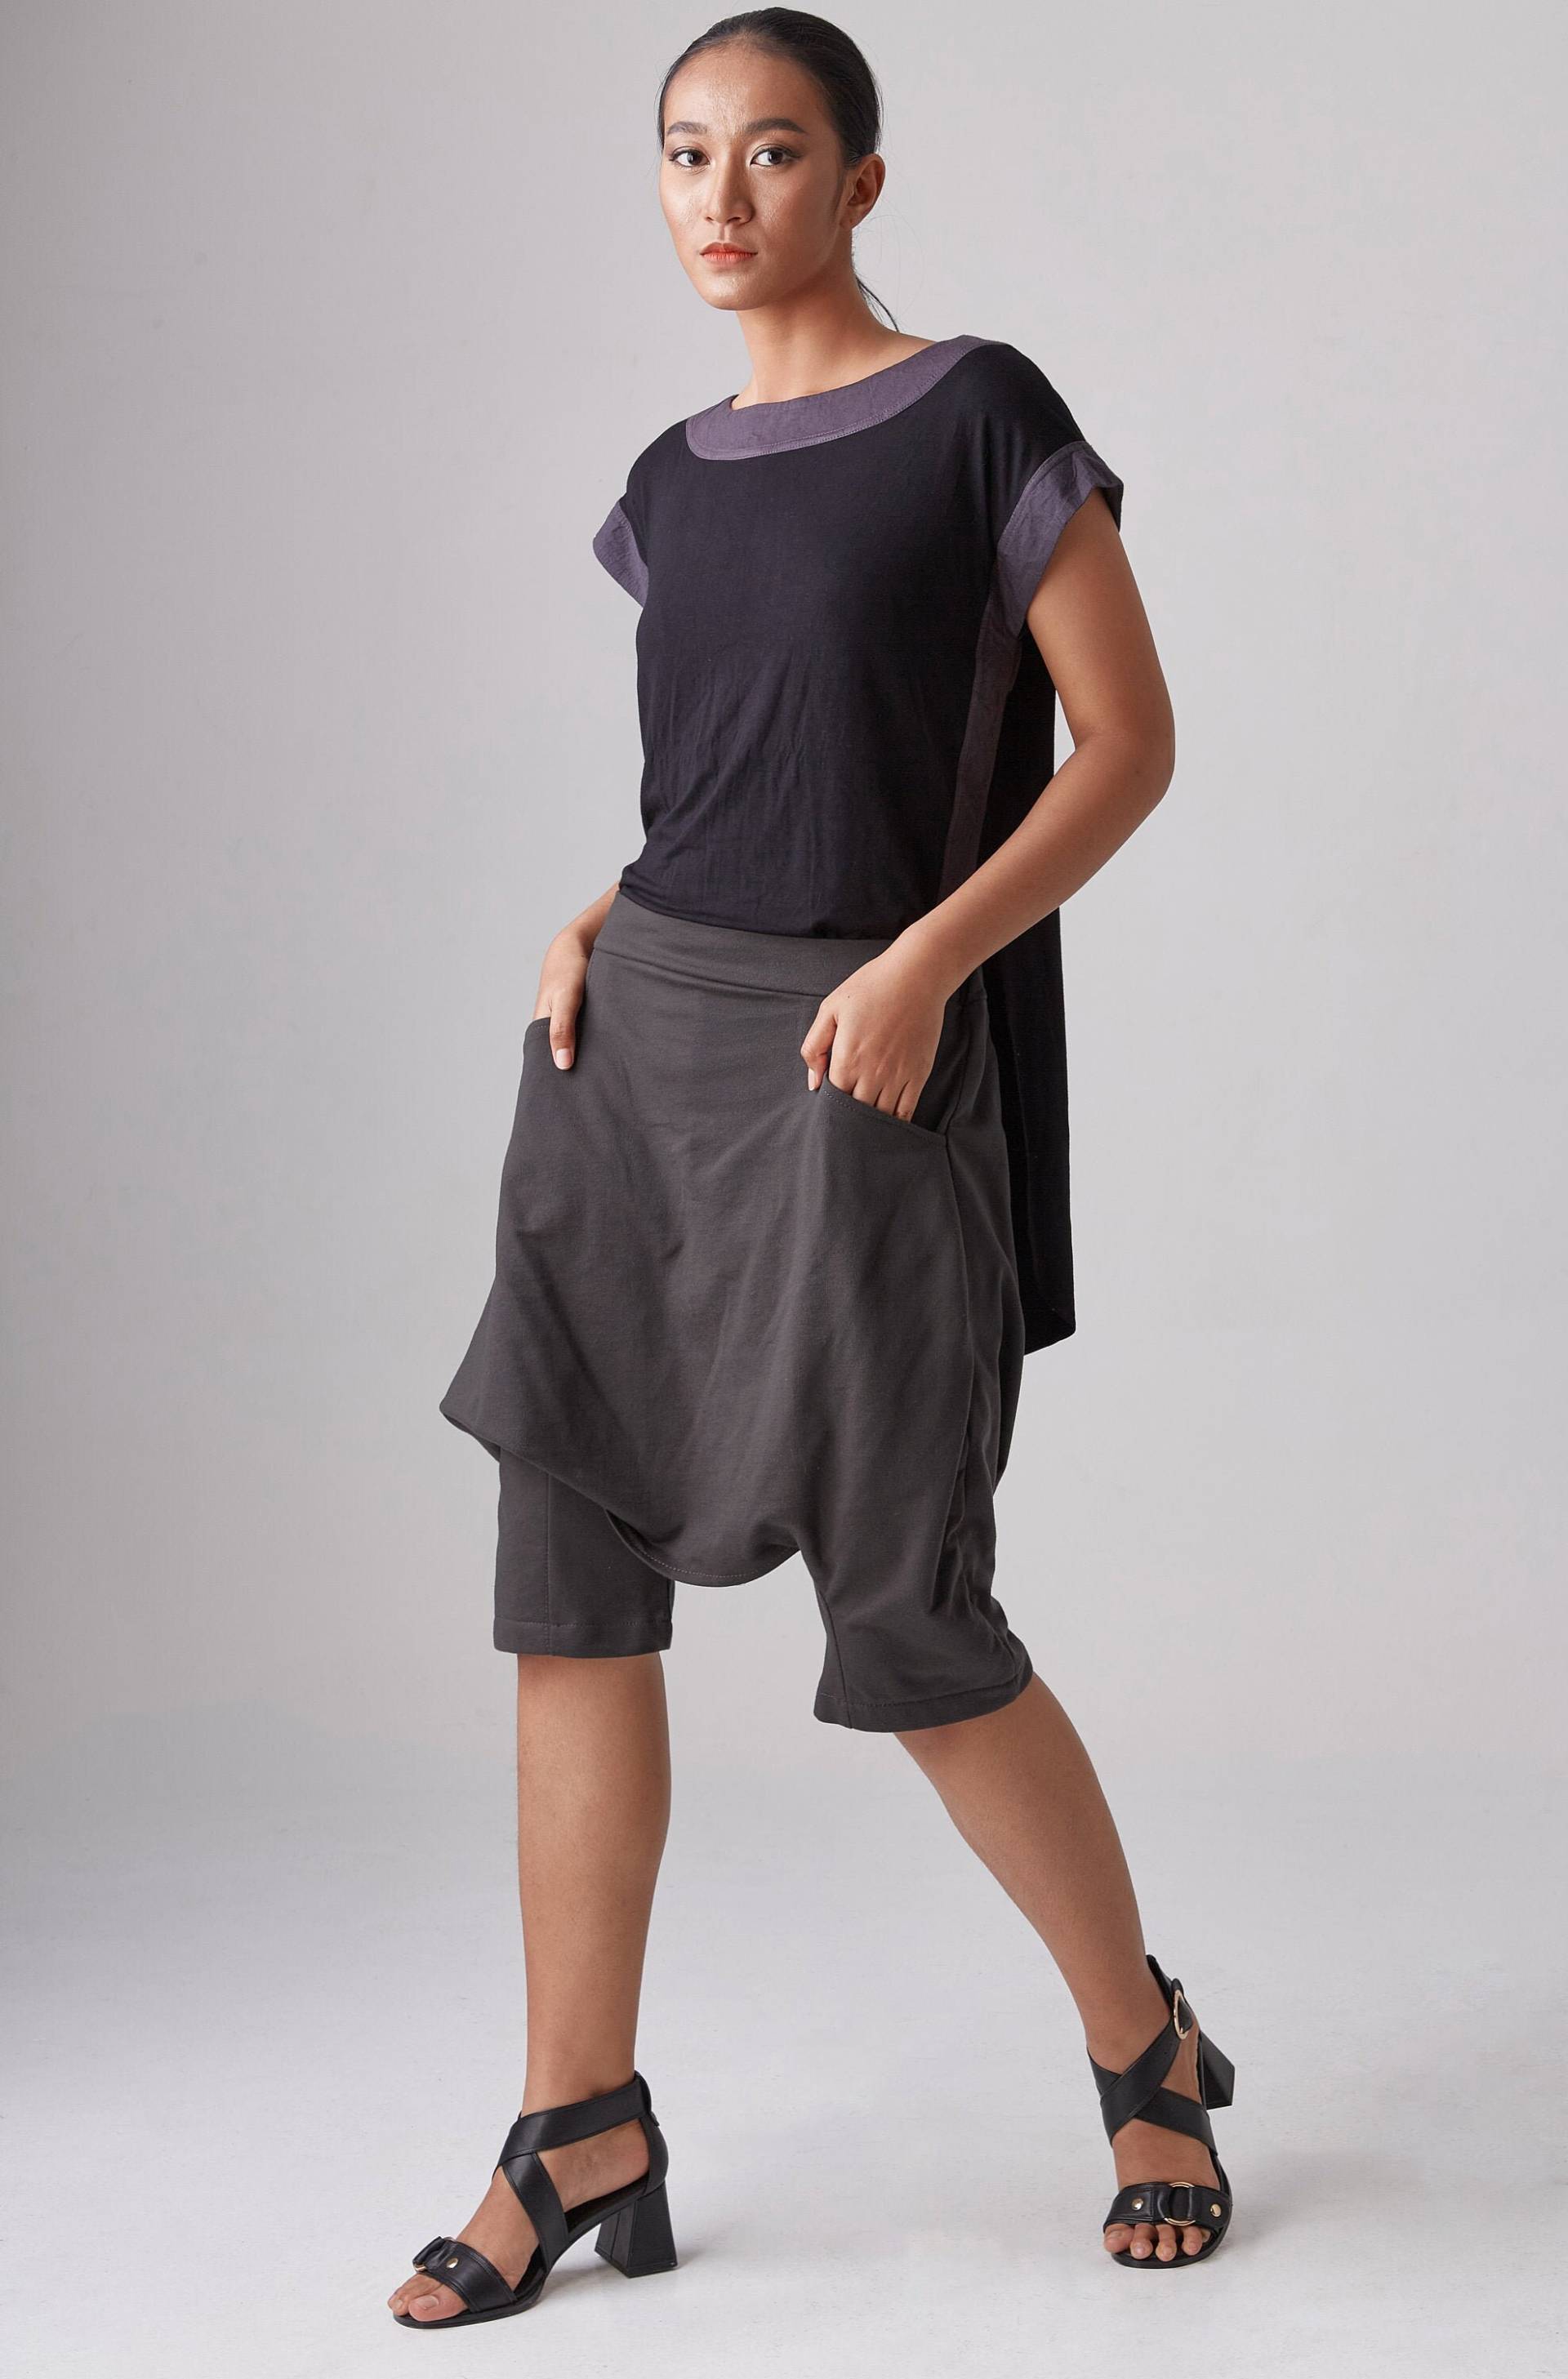 No.264 Frauen Lässige Shorts Mit Tiefem Schritt, Sommer Streetwear Hose, Haremsshorts in Charcoal von JoozieCotton